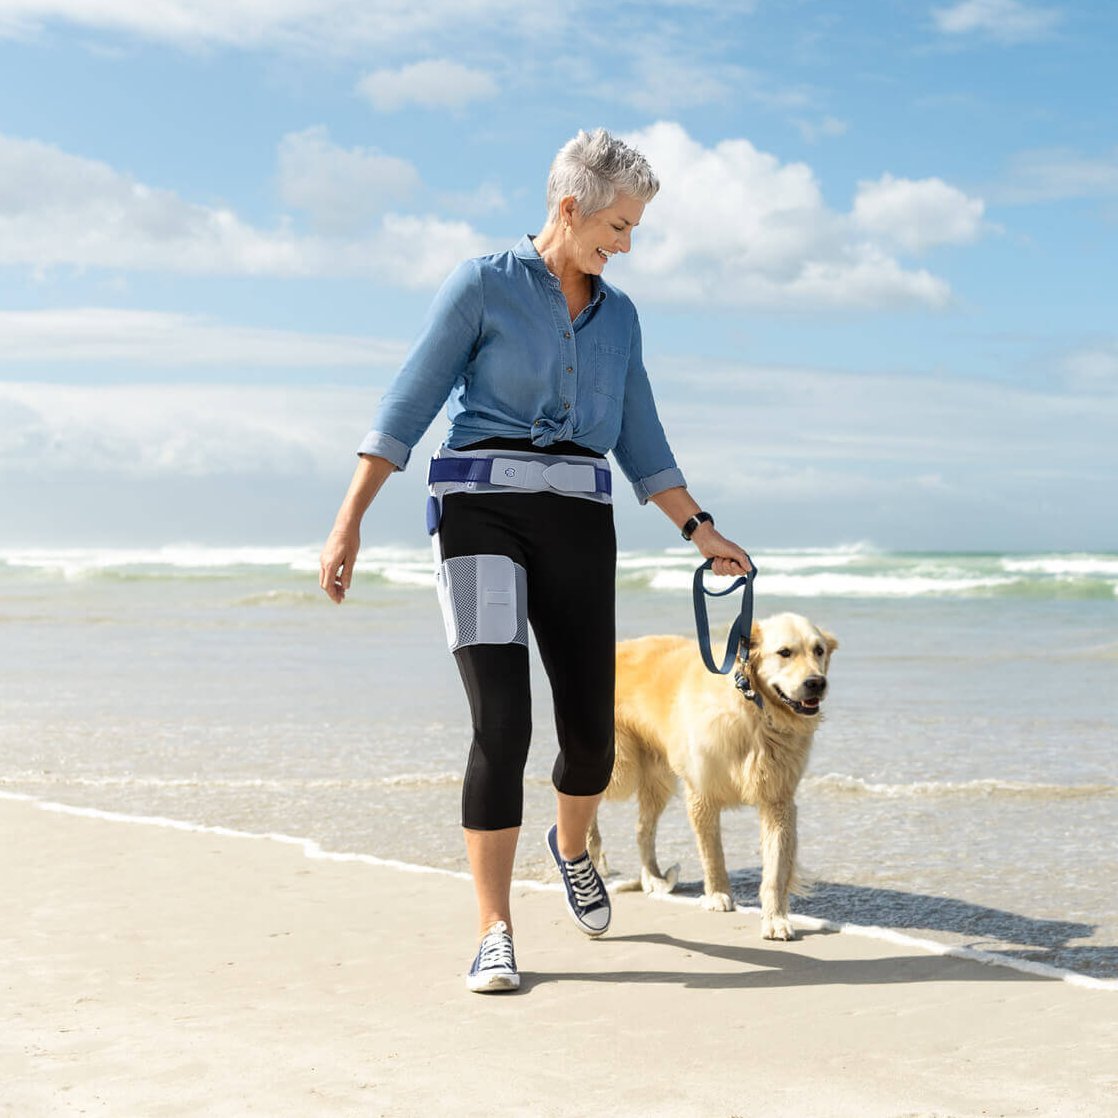 Das Bild zeigt eine ältere Frau beim Strandspaziergang mit ihrem Hund. Die Frau trägt eine CoxaTrain Orthese, die speziell für Hüftarthrose-Patienten entwickelt wurde.